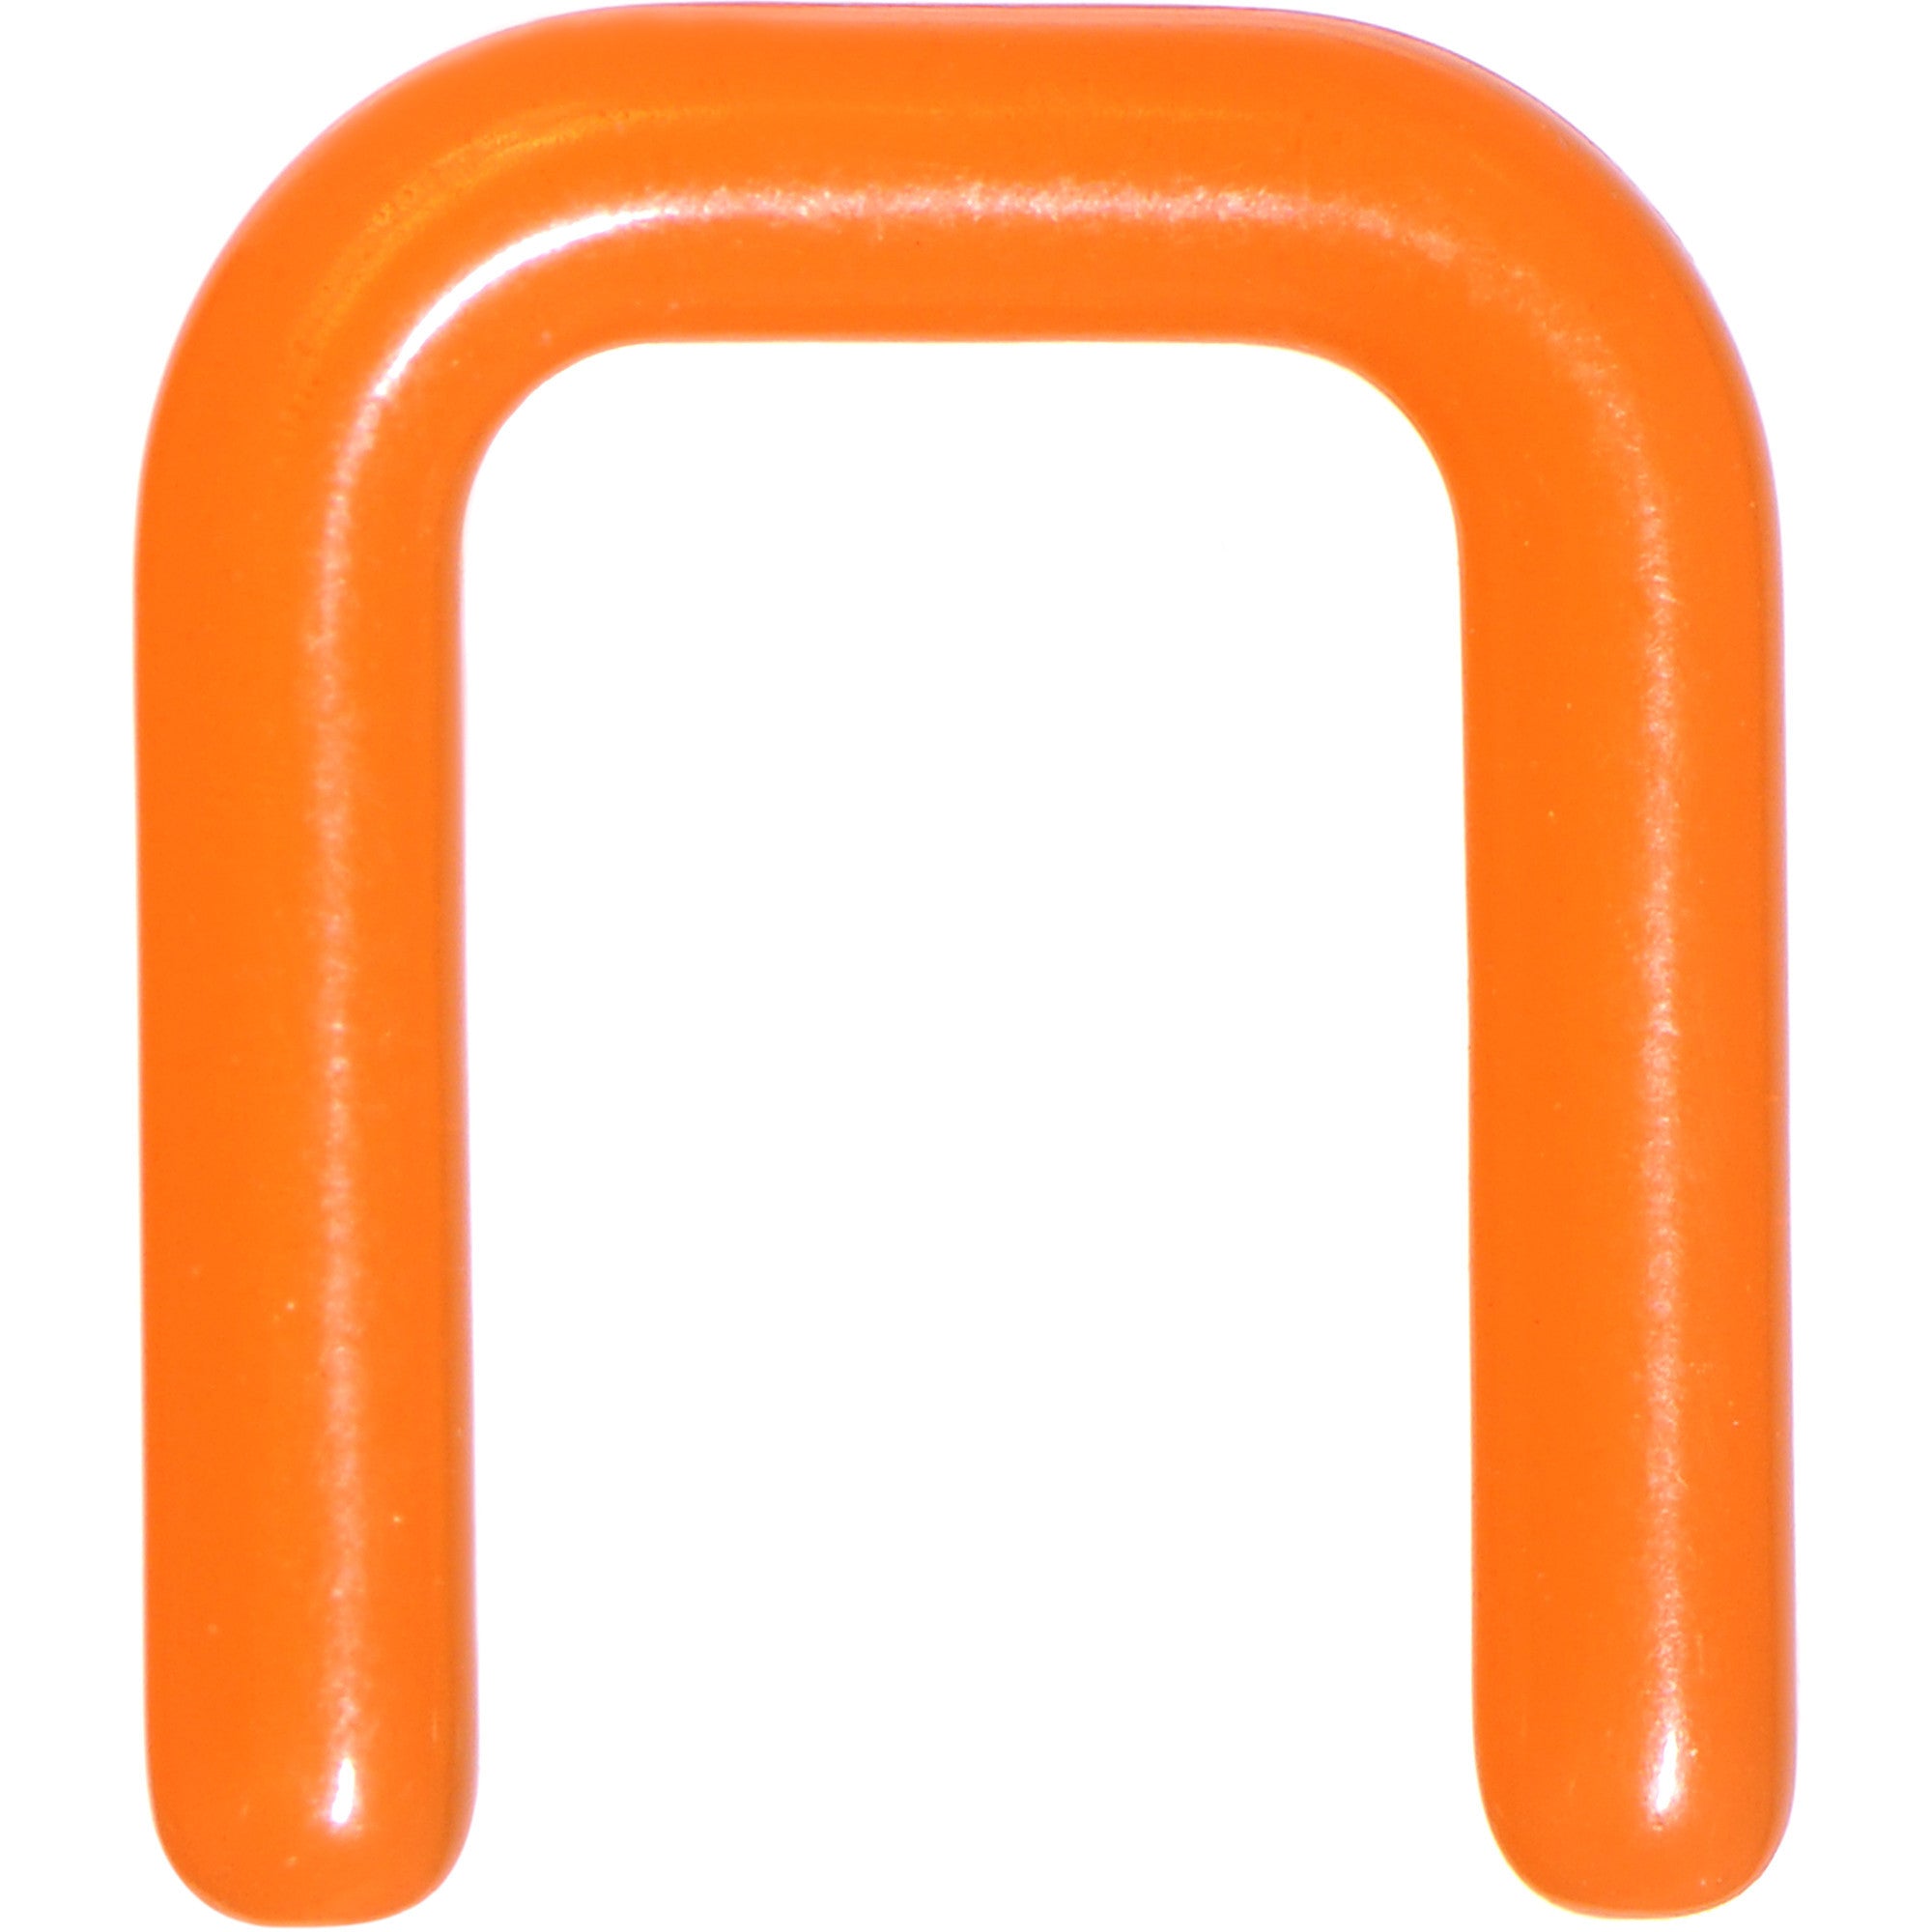 12 Gauge 1/2 Orange Flexible Bioplast Square Septum Retainer